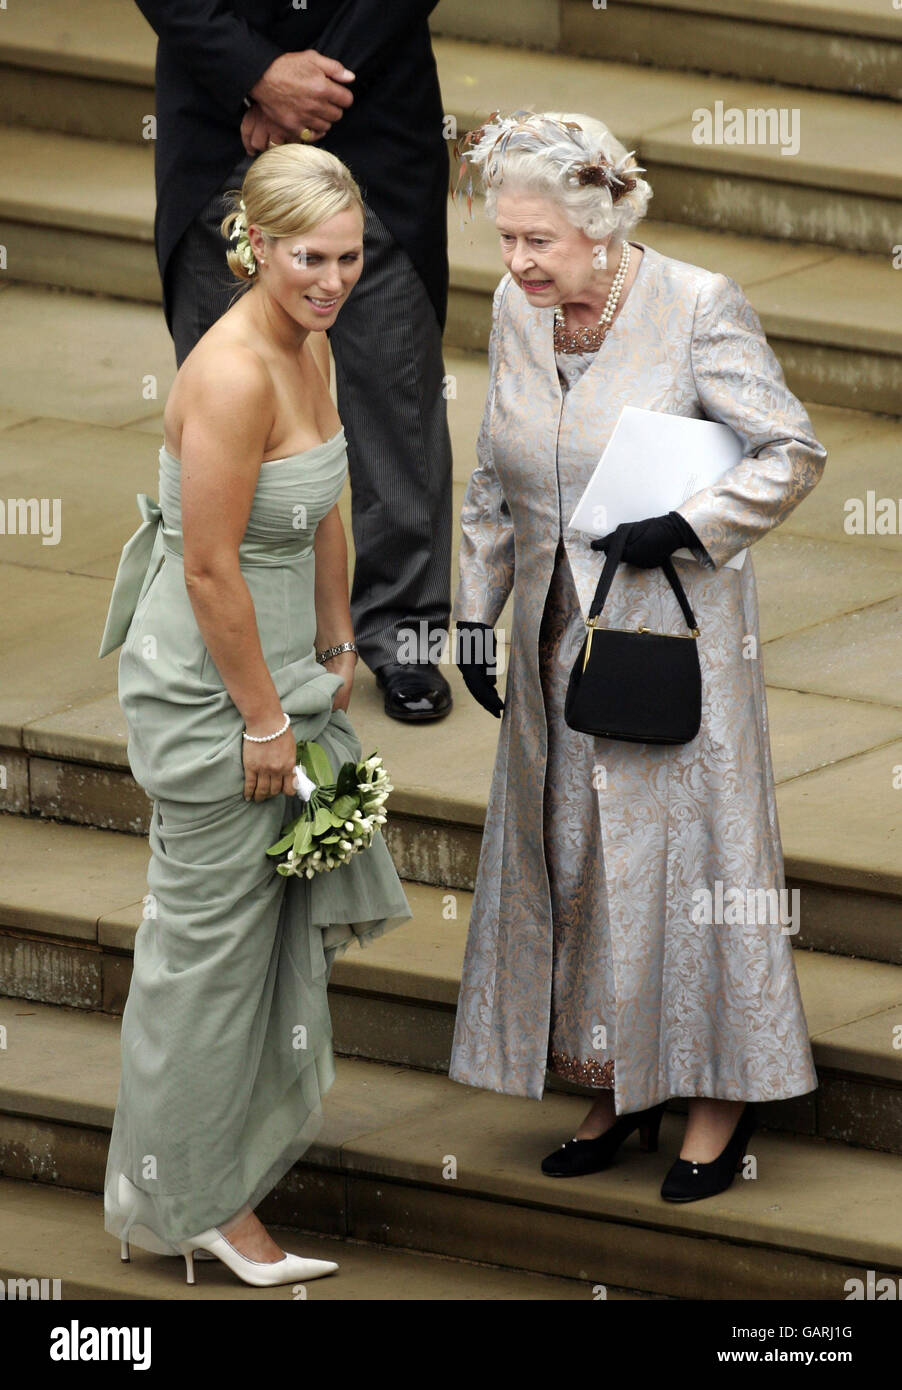 La reine Elizabeth II, parle à sa petite-fille Zara Phillips de la cérémonie  de mariage de Peter Phillips et Autumn Kelly Photo Stock - Alamy